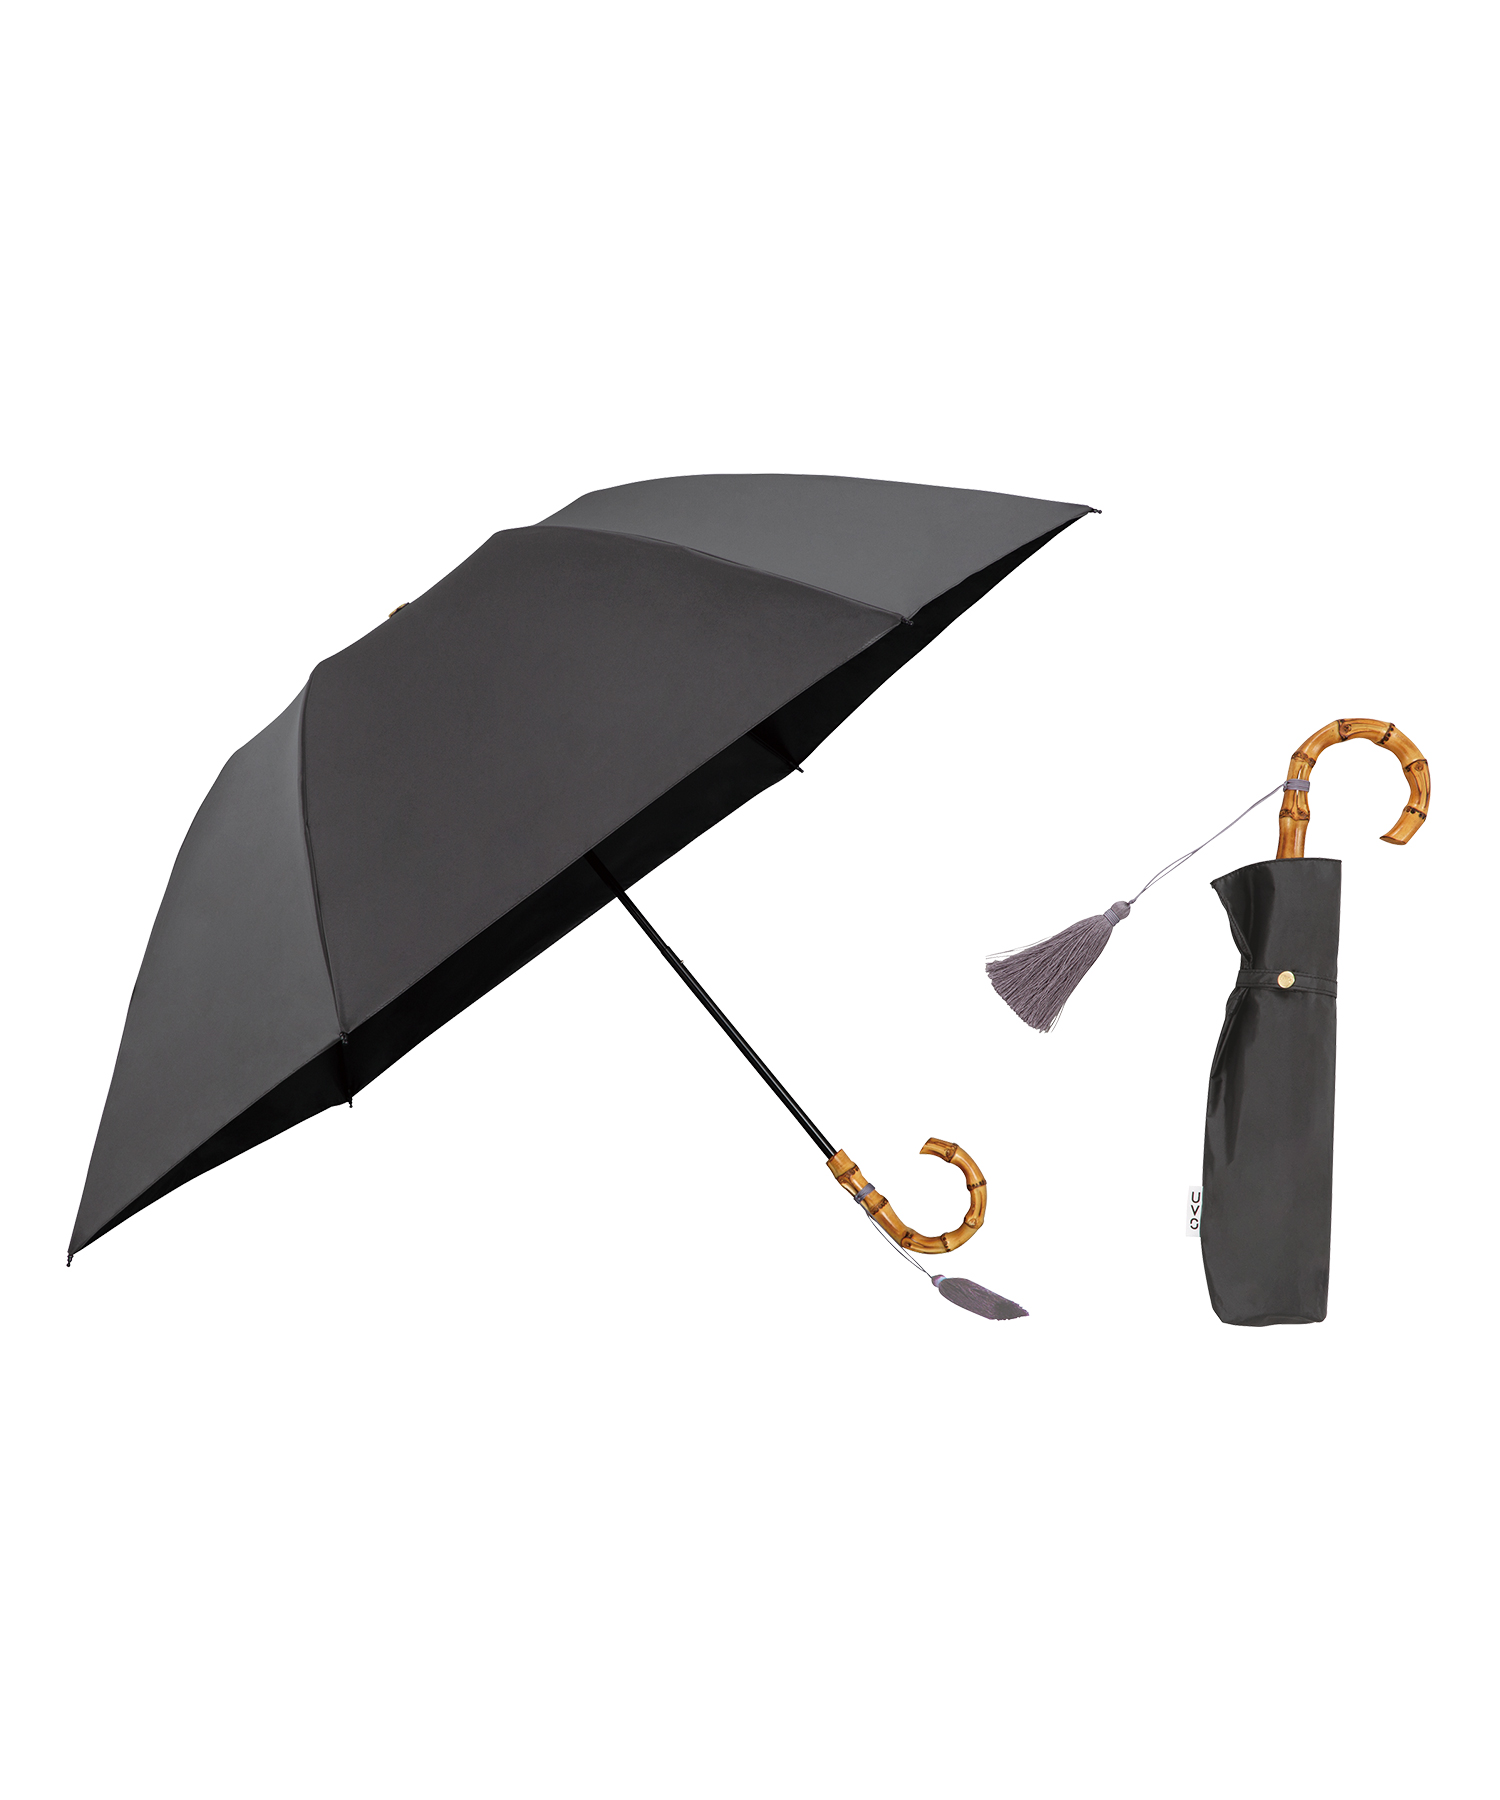 【色:ブラック】日傘 おりたたみ傘 レディース uvカット100 遮光 遮熱 折